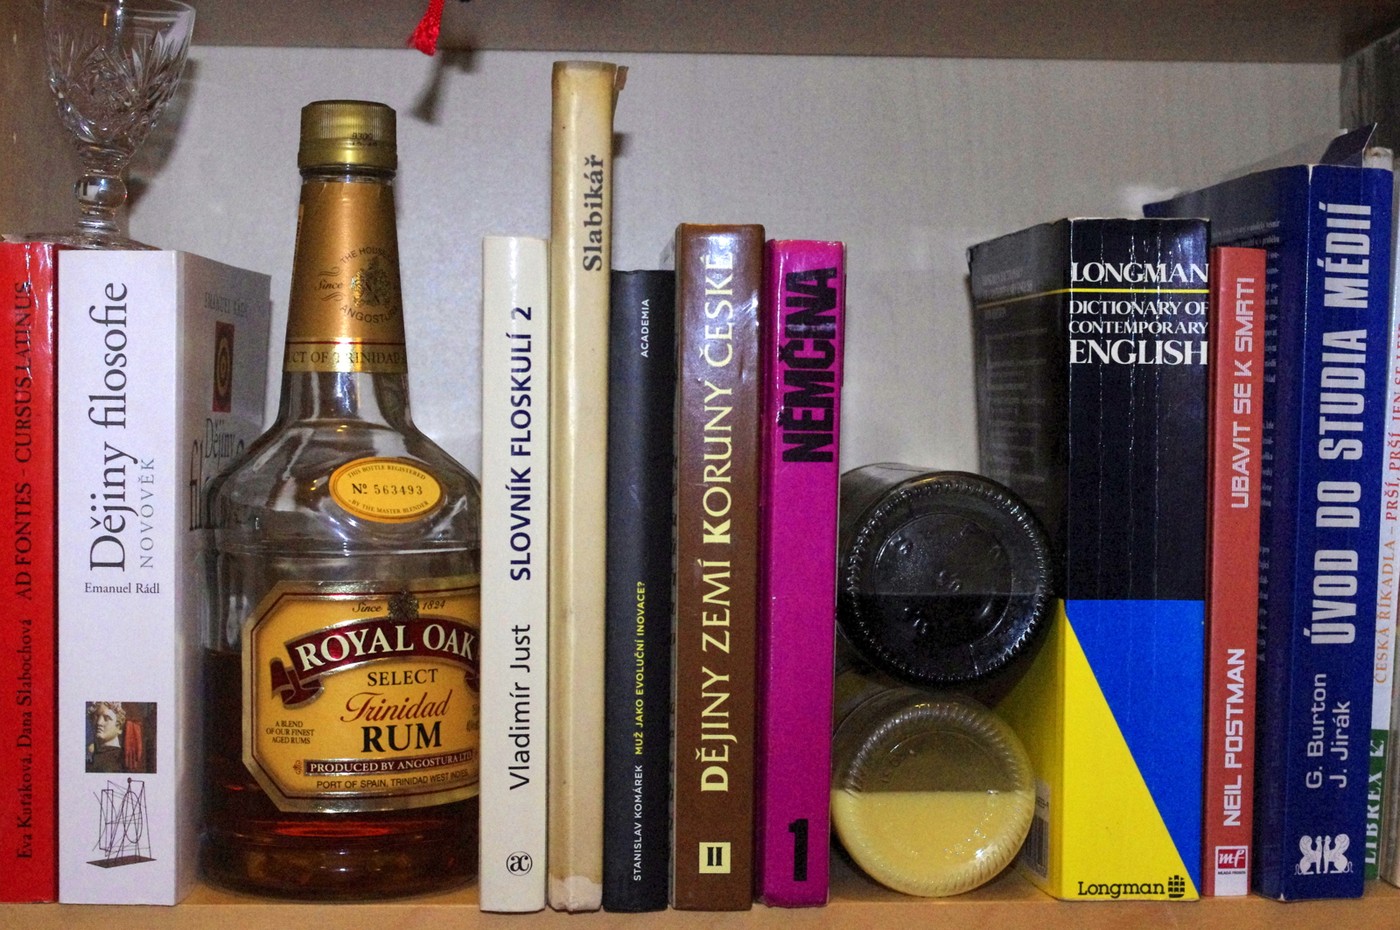 Nejenže mohou lahve s alkoholem ve vaší knihovně sloužit jako zarážky, i nudným knihám navíc dodávají chybějící barvu